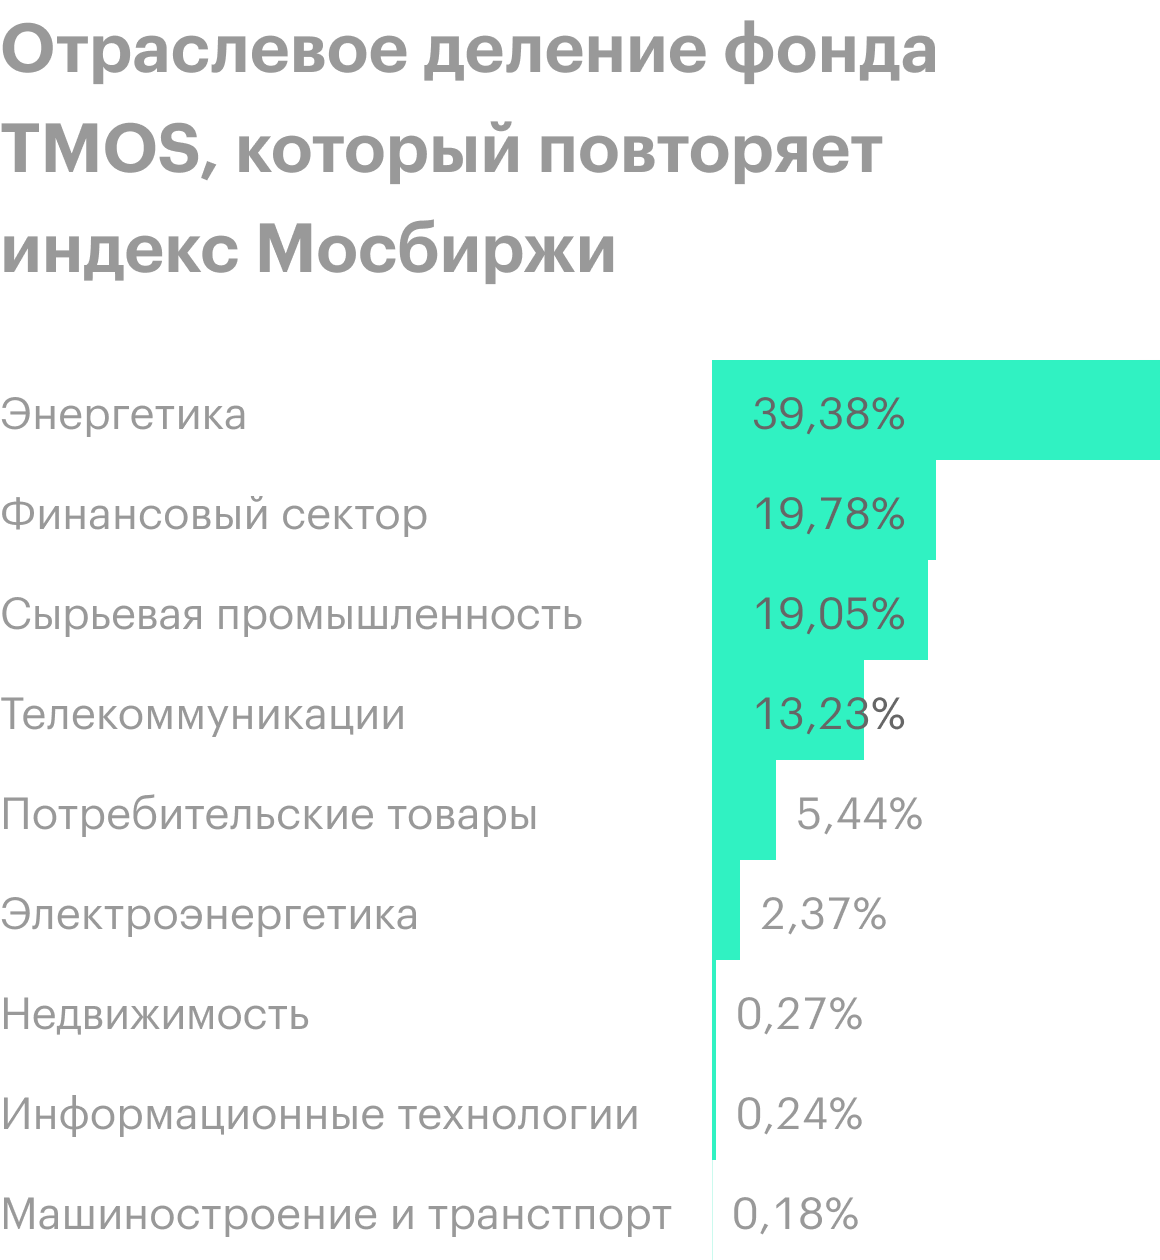 В индексе 42 компании, которые составляют 80% совокупной капитализации российского фондового рынка. Он отражает характер российской экономики